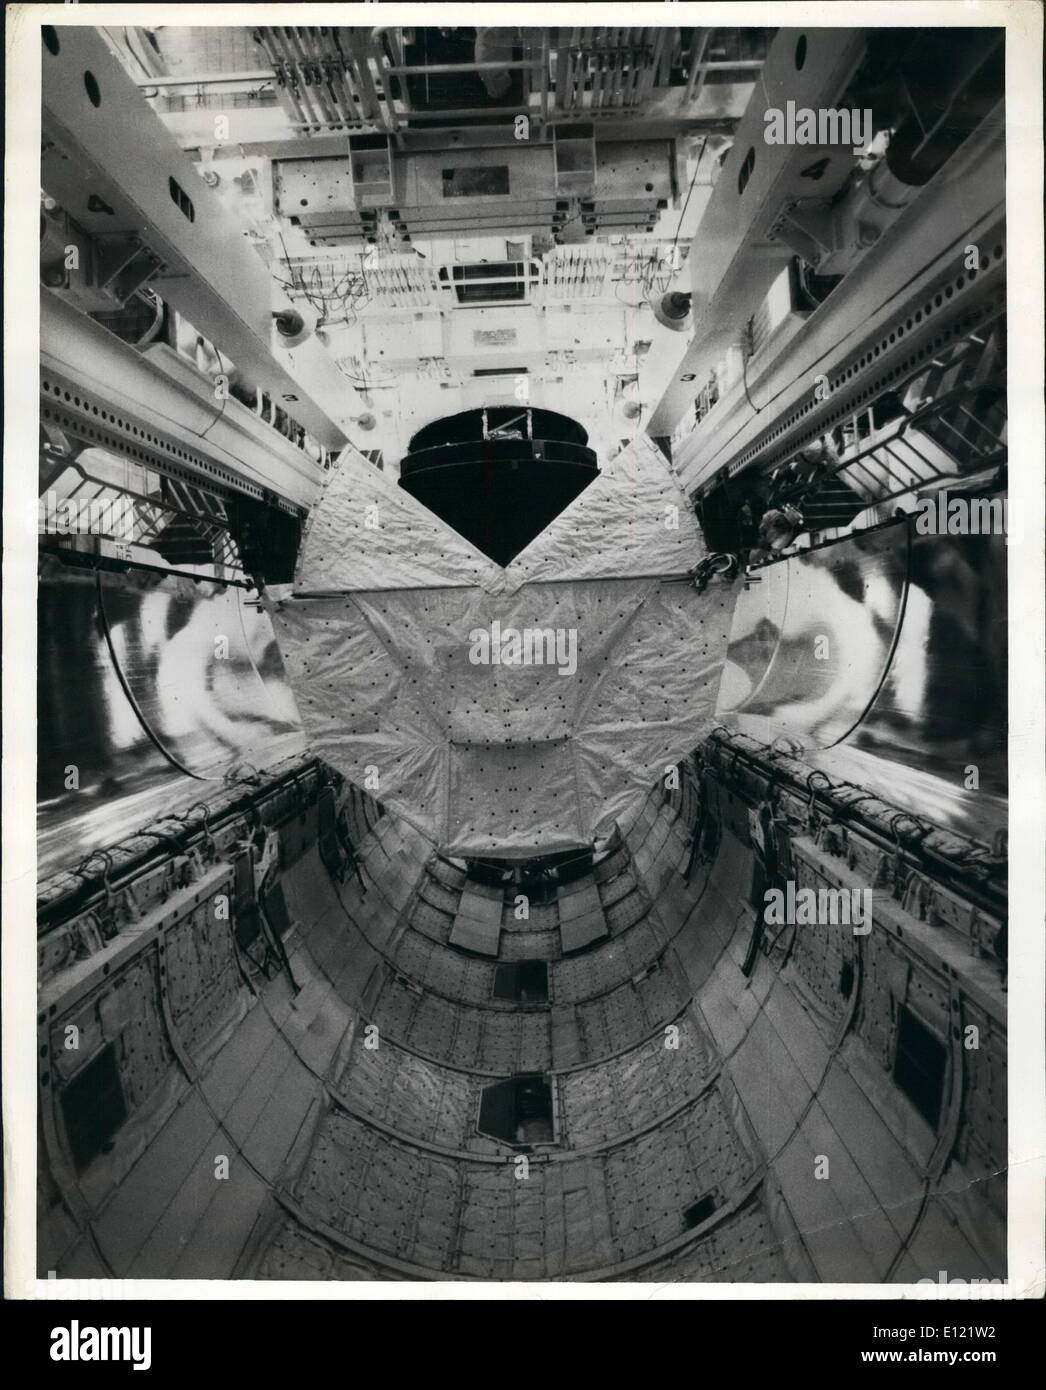 Nov. 11, 1982 - Notizie consolidata immagine: Caricamento della navetta spaziale Cargo Bay.: Il Centro Spaziale Kennedy, FL. I due satelliti che volerà a bordo del quinto volo dello Space Shuttle Columbia sono state caricate nella stiva di cargo dell'orbiter su pad 39A in preparazione per un nov. 11, 1982 lancio. Il primo satellite,possedute da satellite del sistema di Business sarà lanciato in uno spazio di circa otto ore dopo il decollo. Un satellite canadese - chiamato Anik e proprietà di Telesat del Canada sarà lanciato dal cargo bay circa ventiquattro ore più tardi. Ciascun satellite pesa circa 8.000 libbre Foto Stock